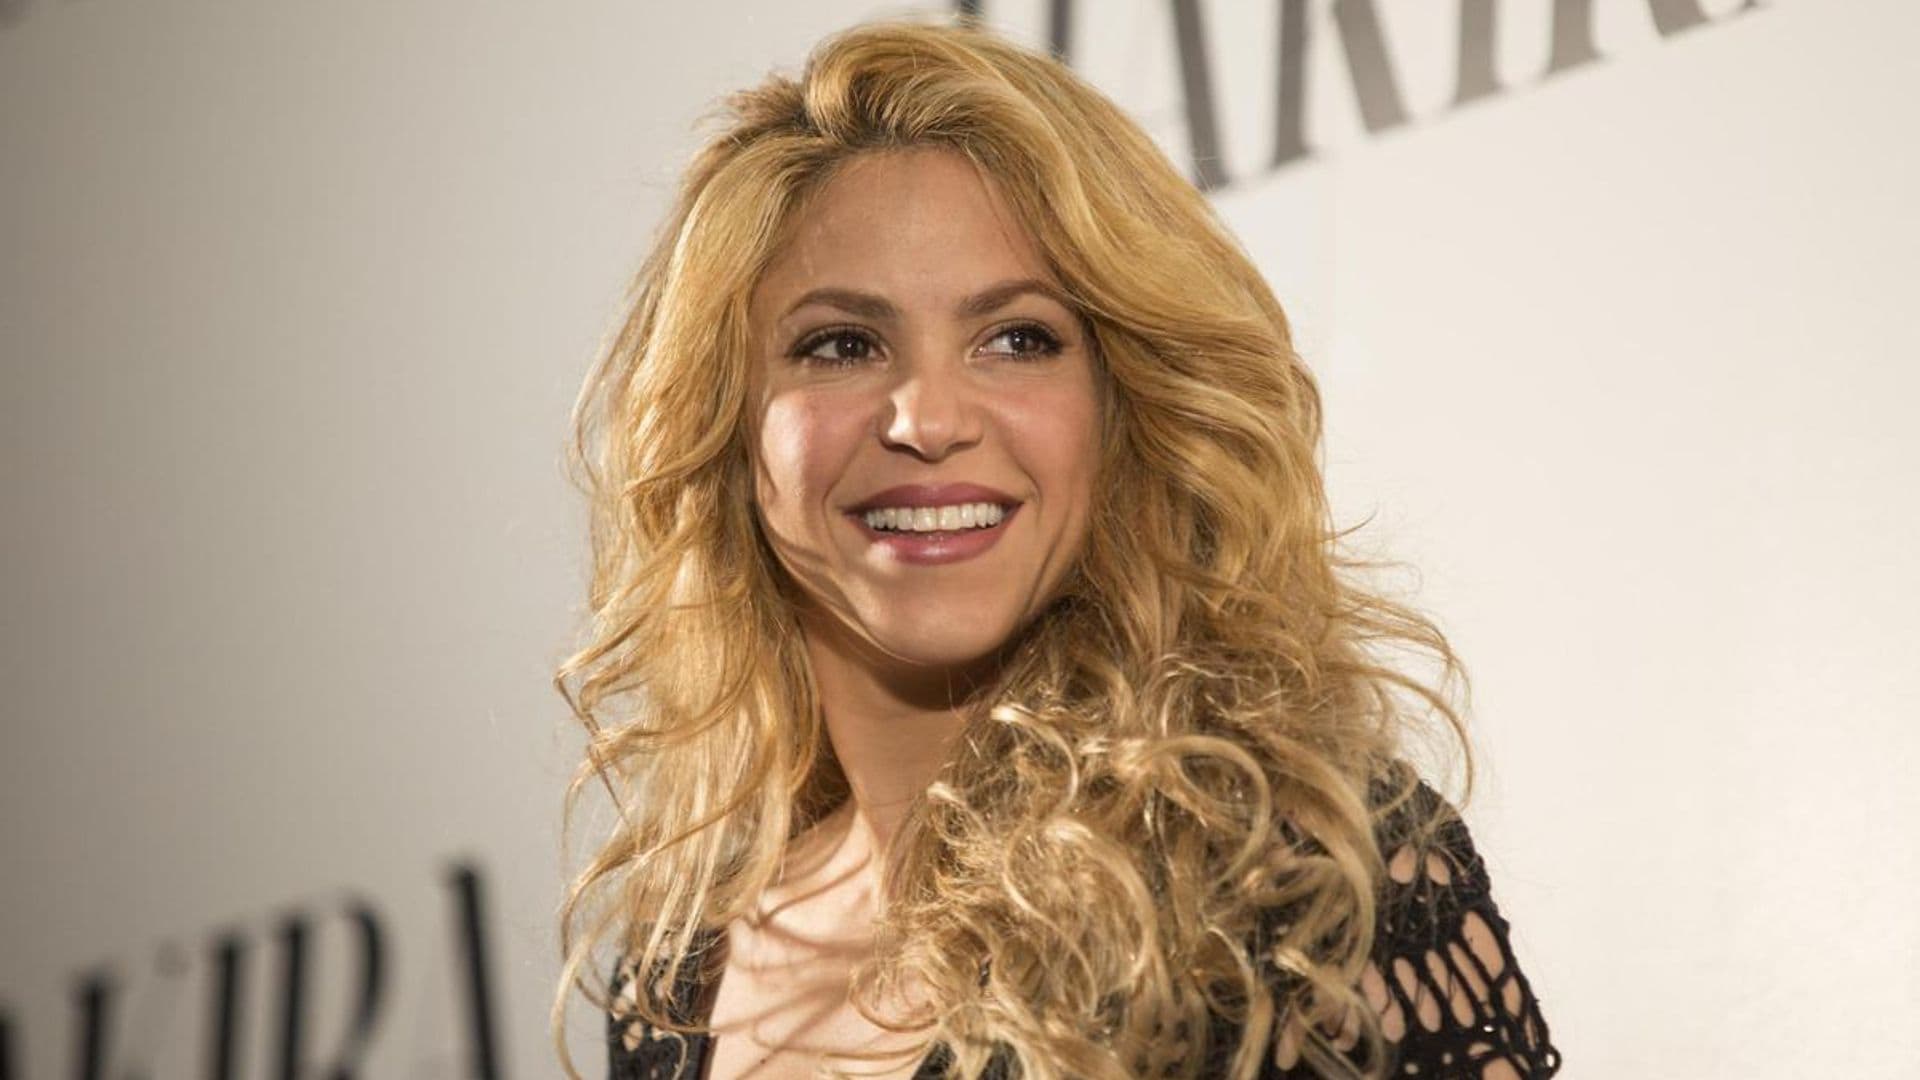 Colombian singer Shakira